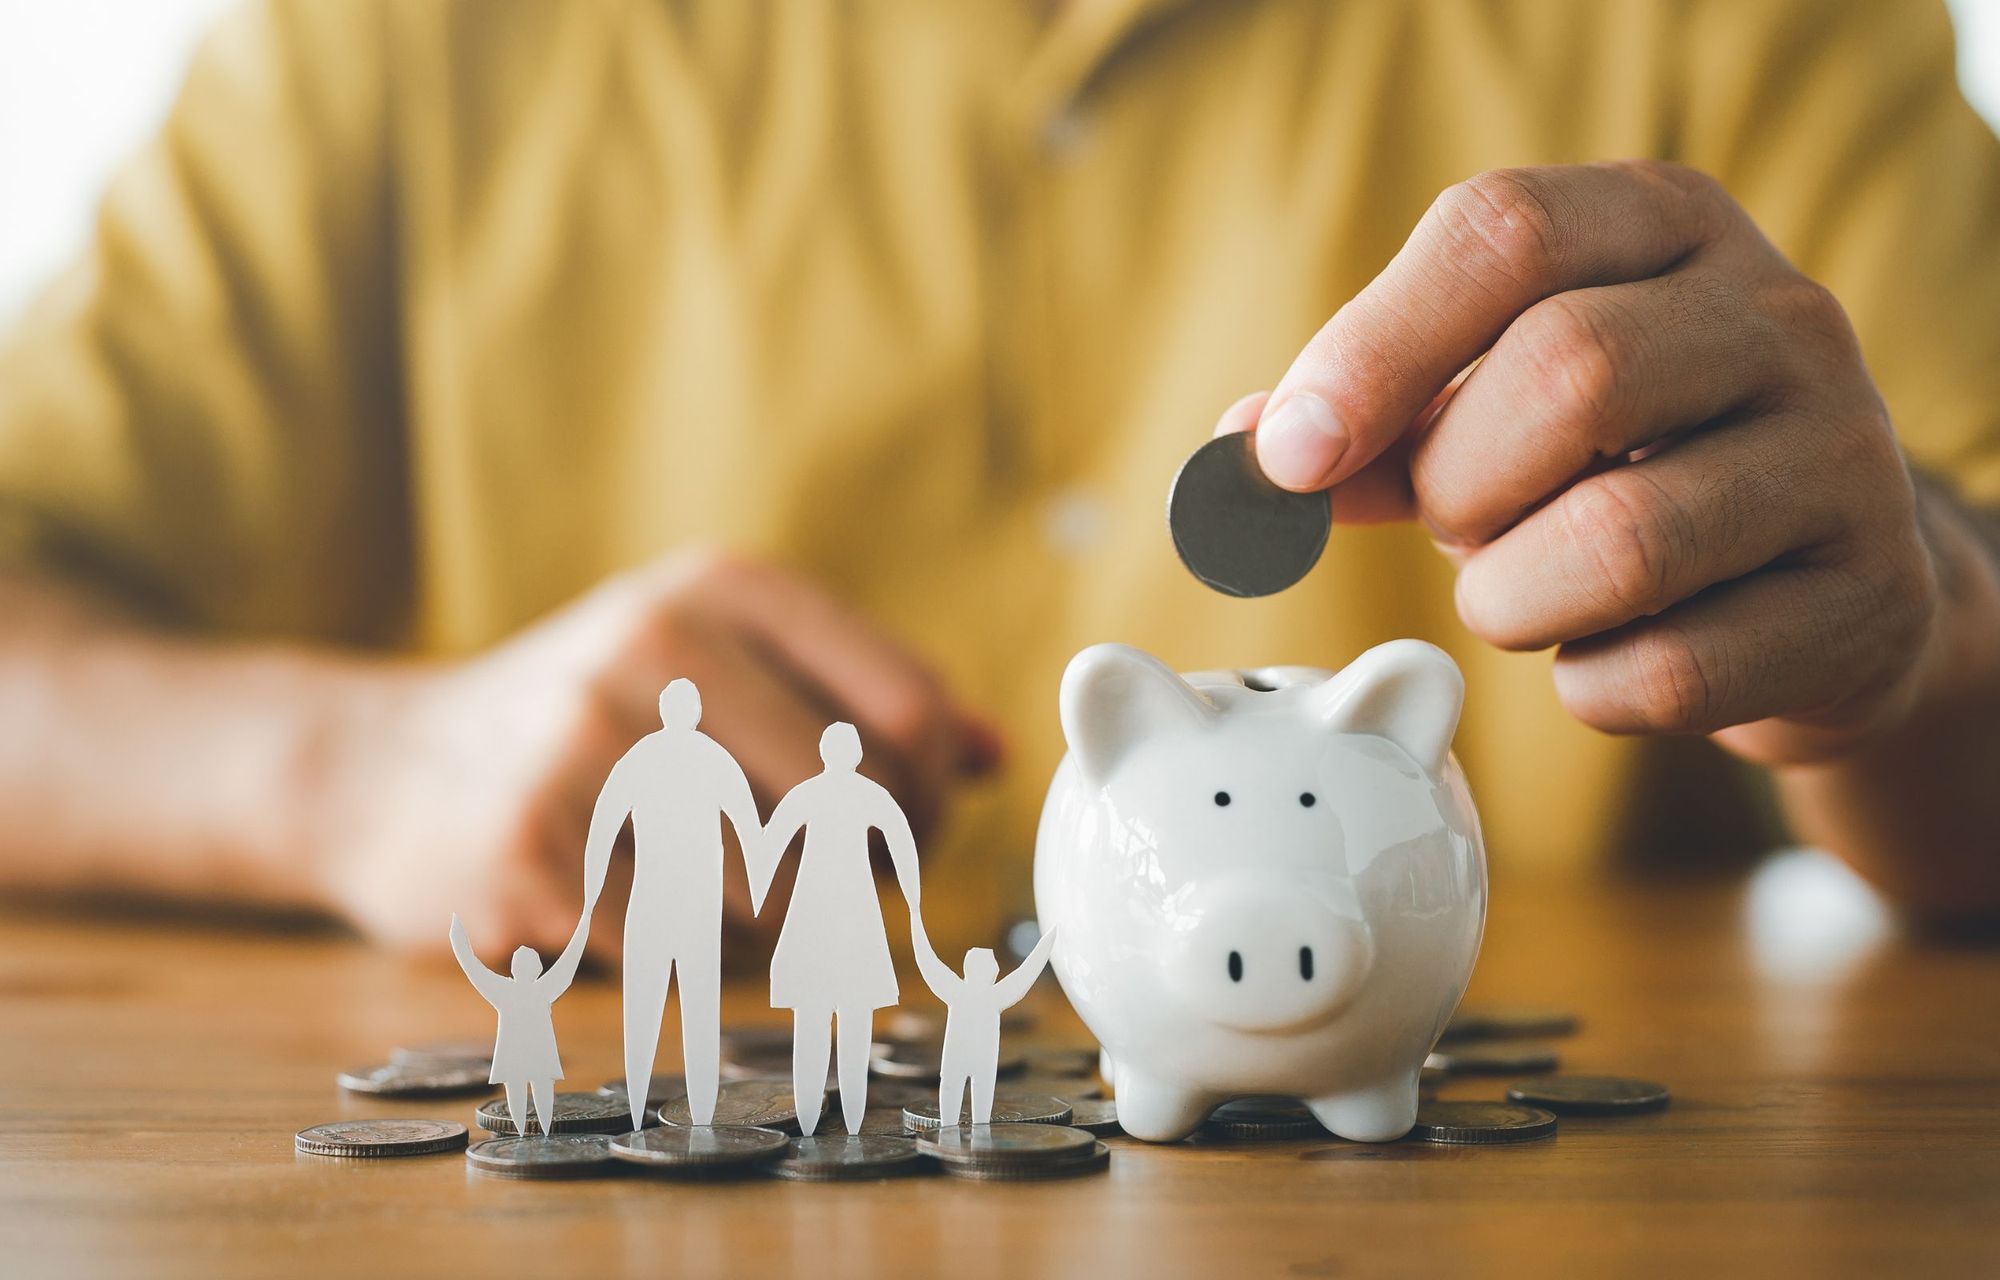 Educación financiera para familias indocumentadas: ofrezca consejos y recursos para administrar las finanzas